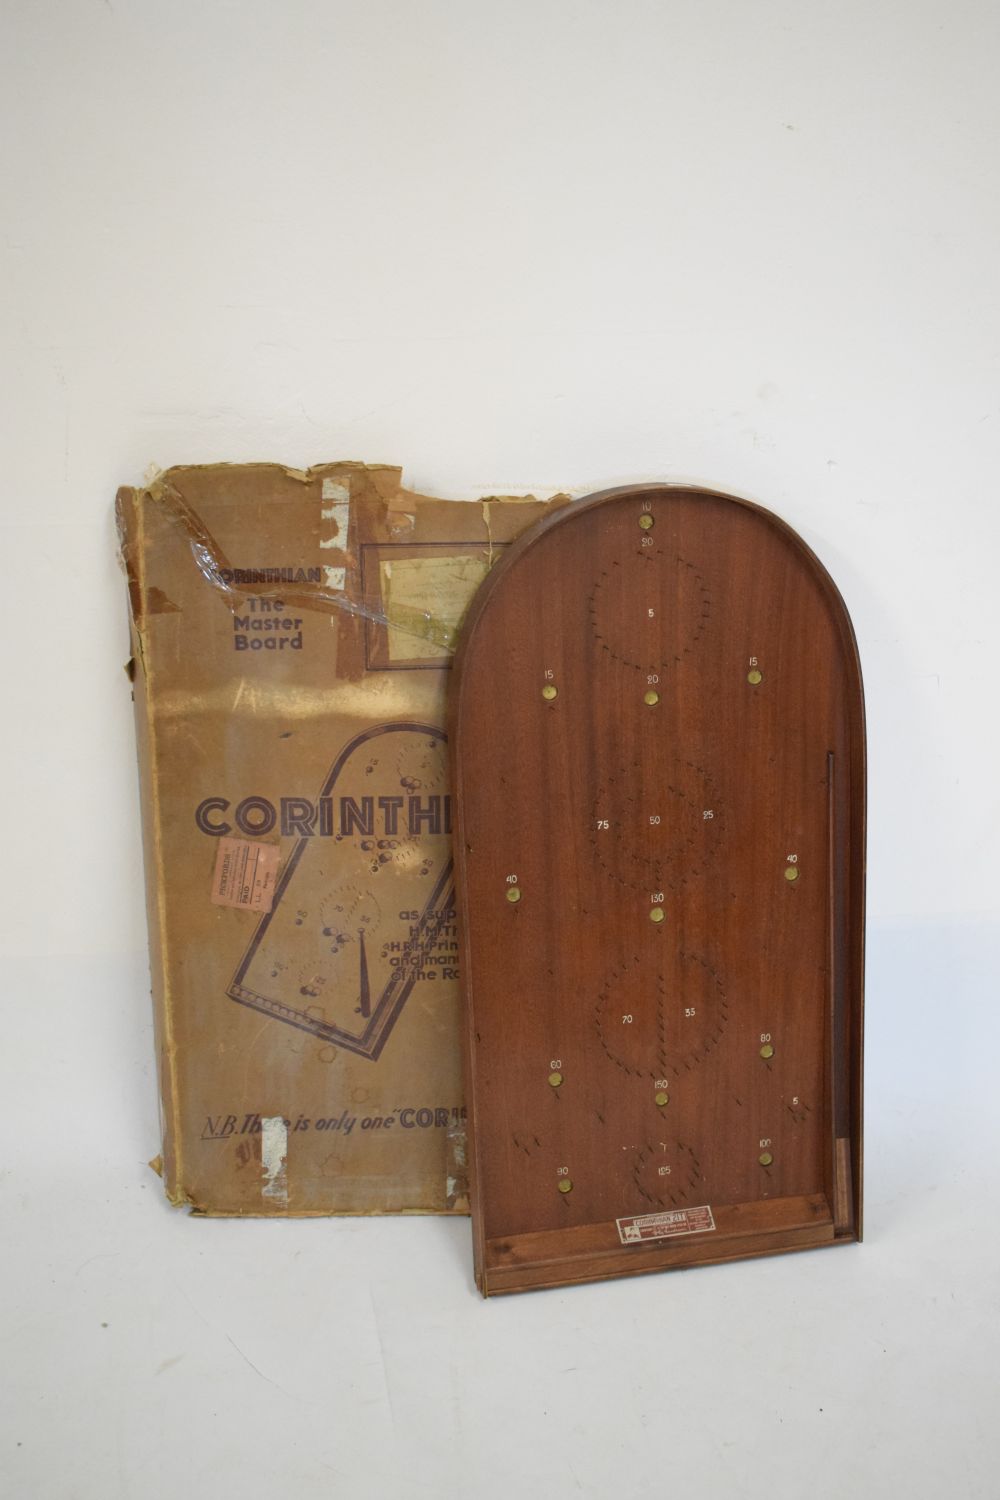 Corinthian bagatelle board, boxed